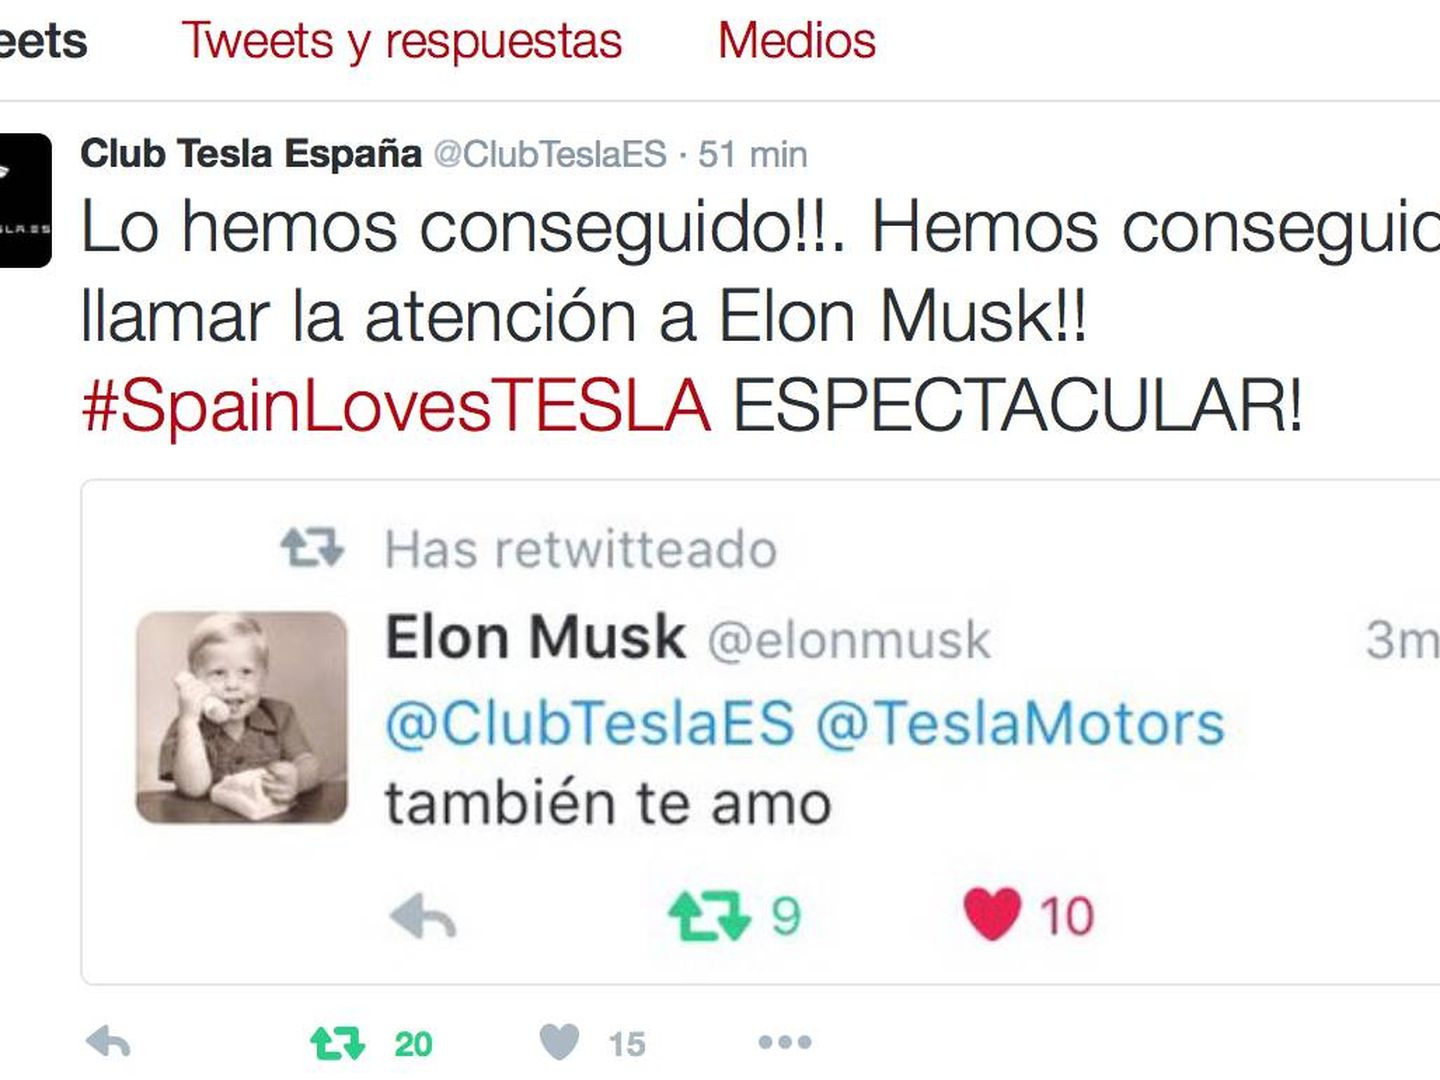 El tuit de respuesta de Elon Musk a la campaña #spainlovestesla